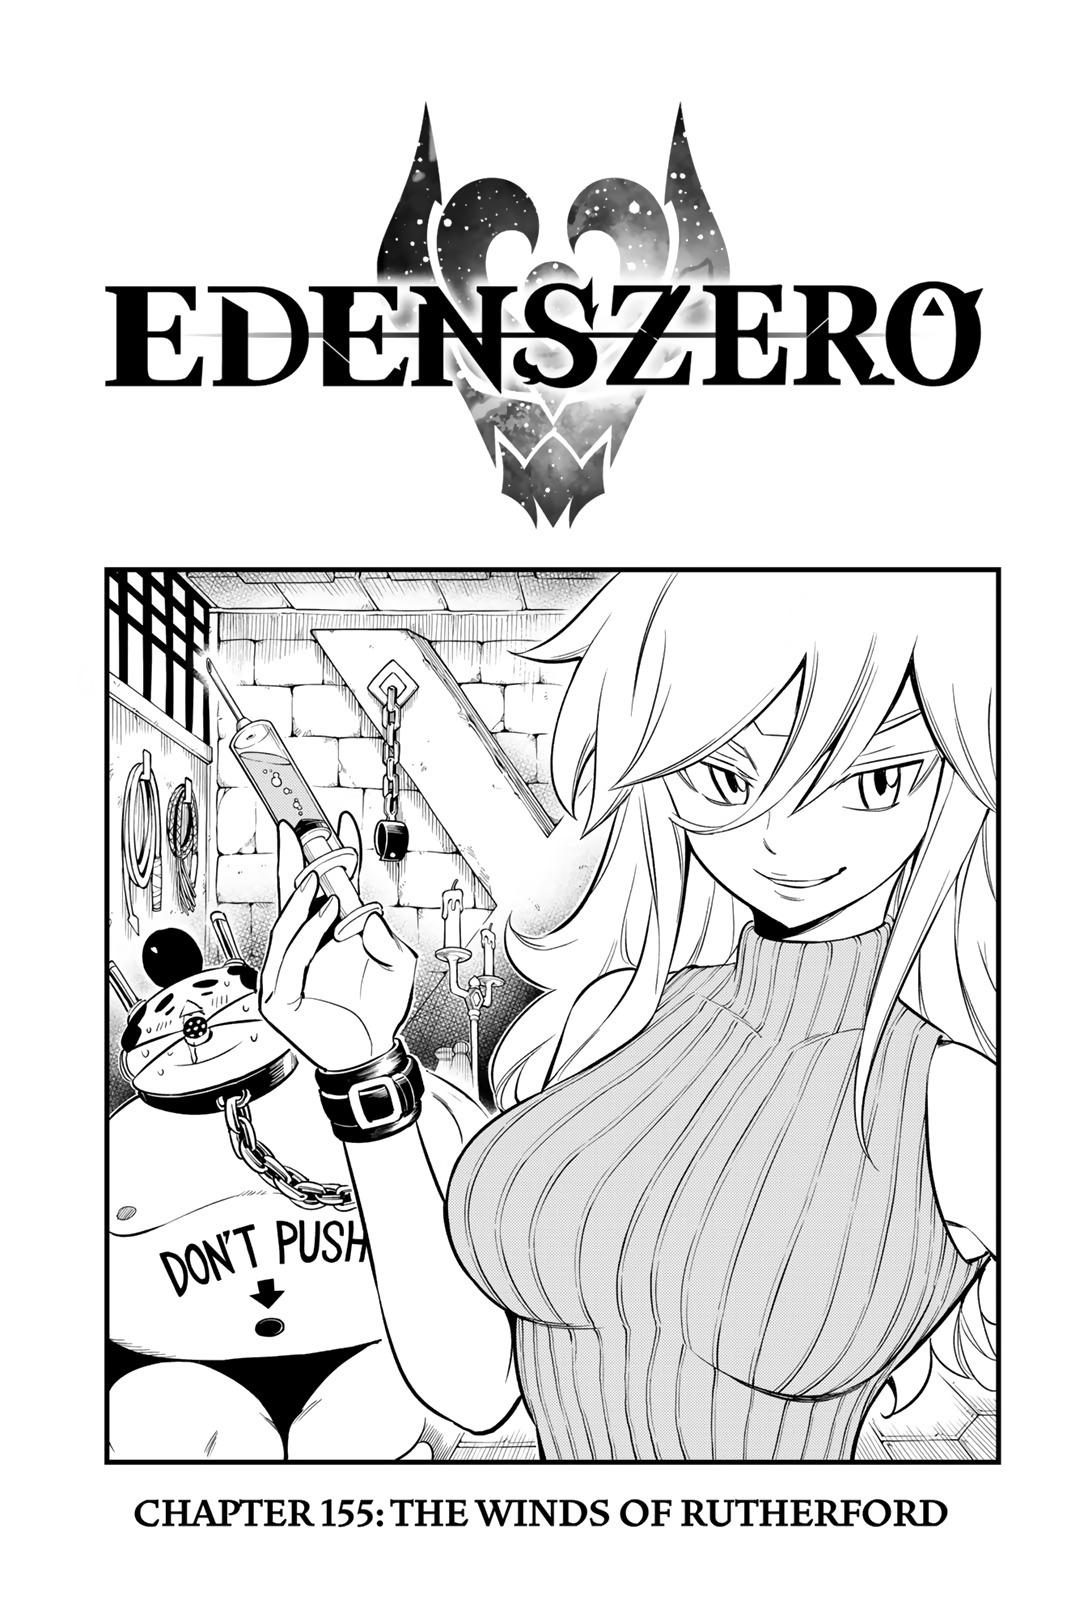 Edens Zero Chapter 155 image 01